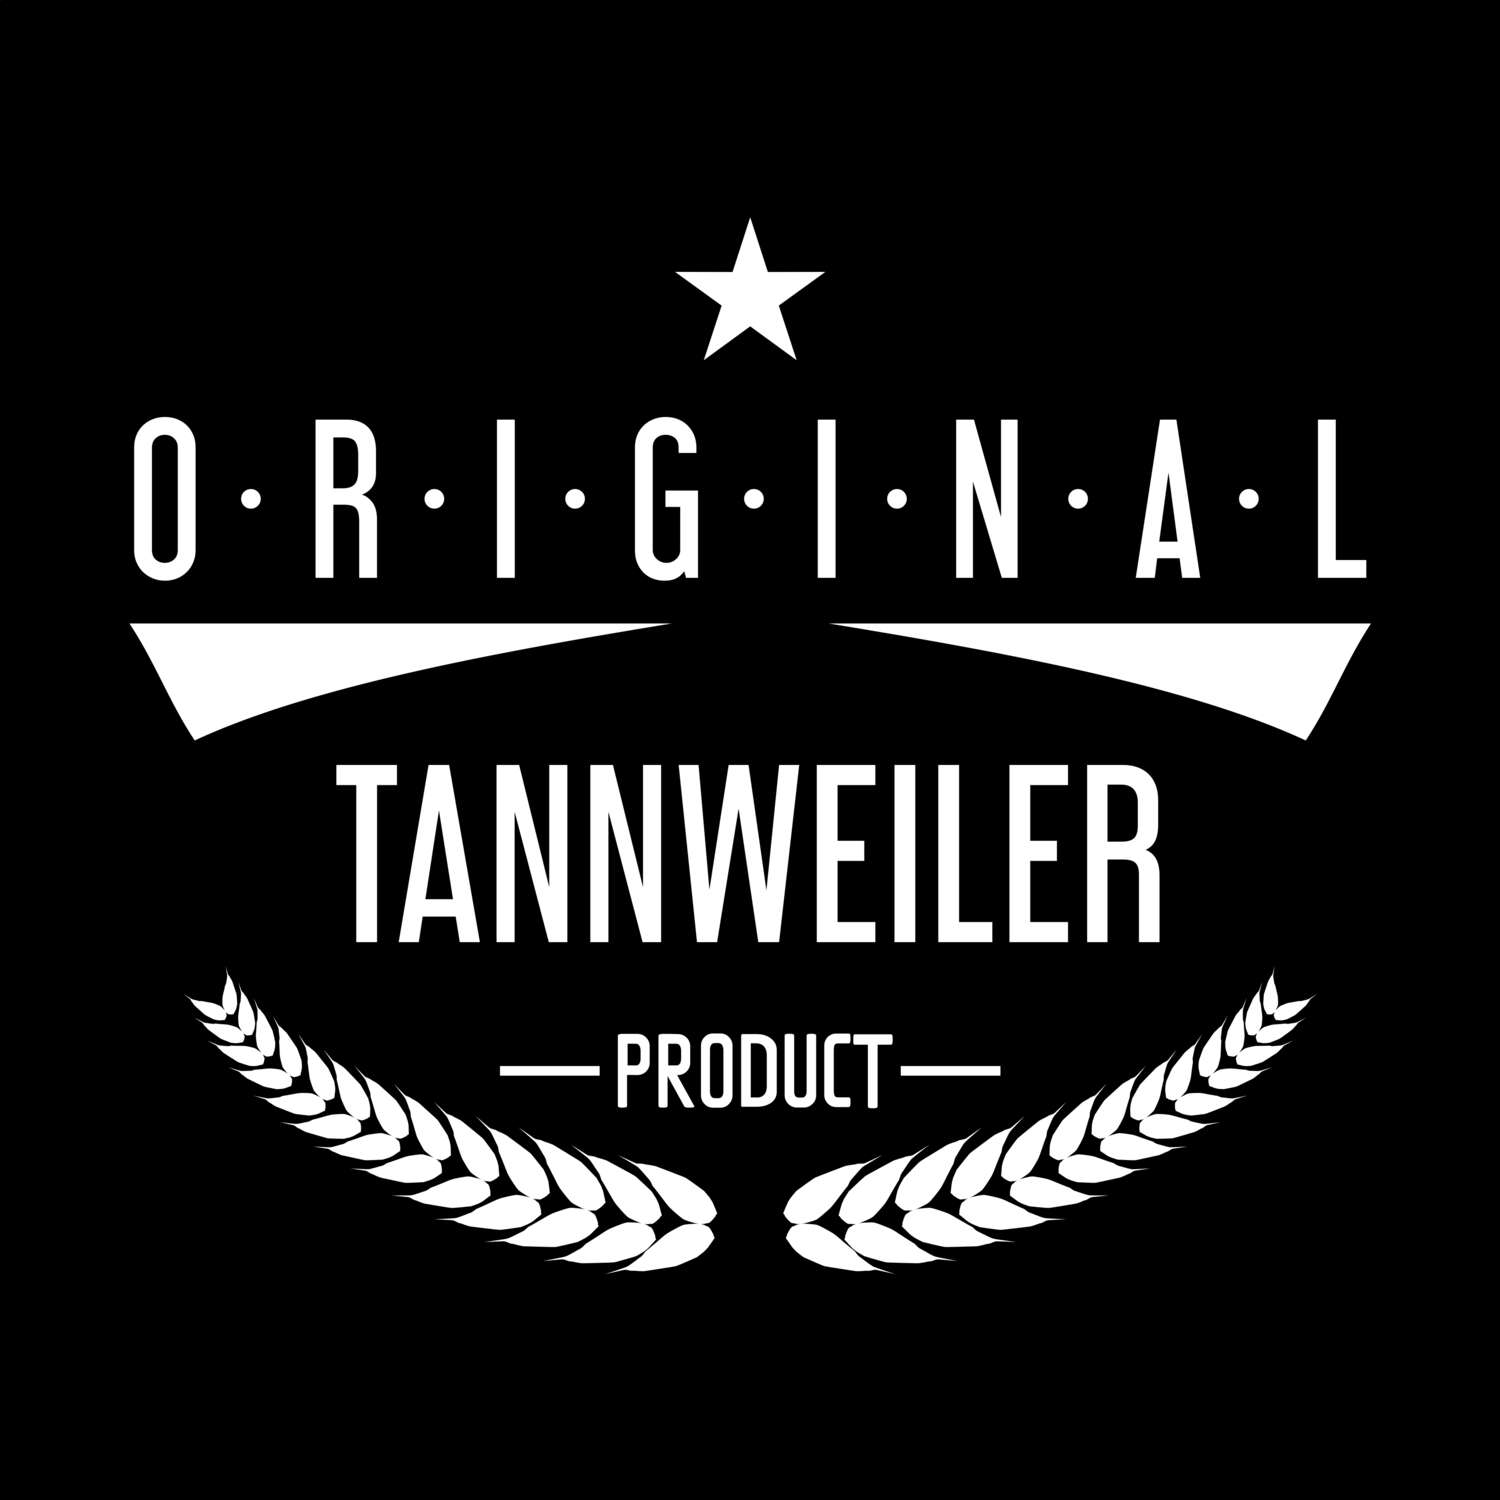 Tannweiler T-Shirt »Original Product«